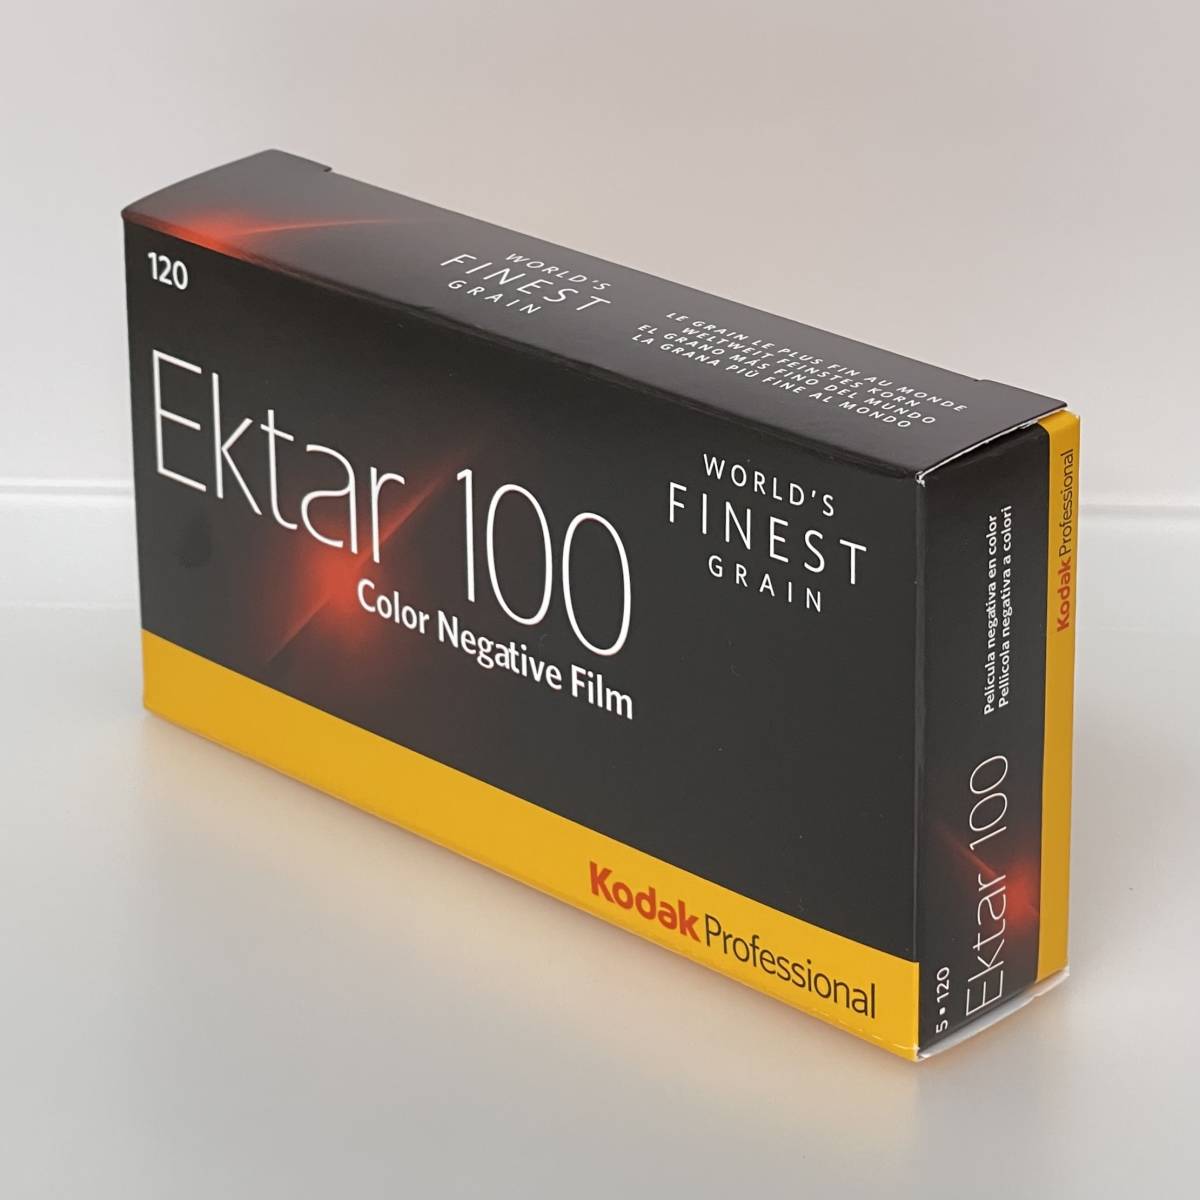 売り出し コダック Kodak Ektar（エクター）100 120 5本パック その他